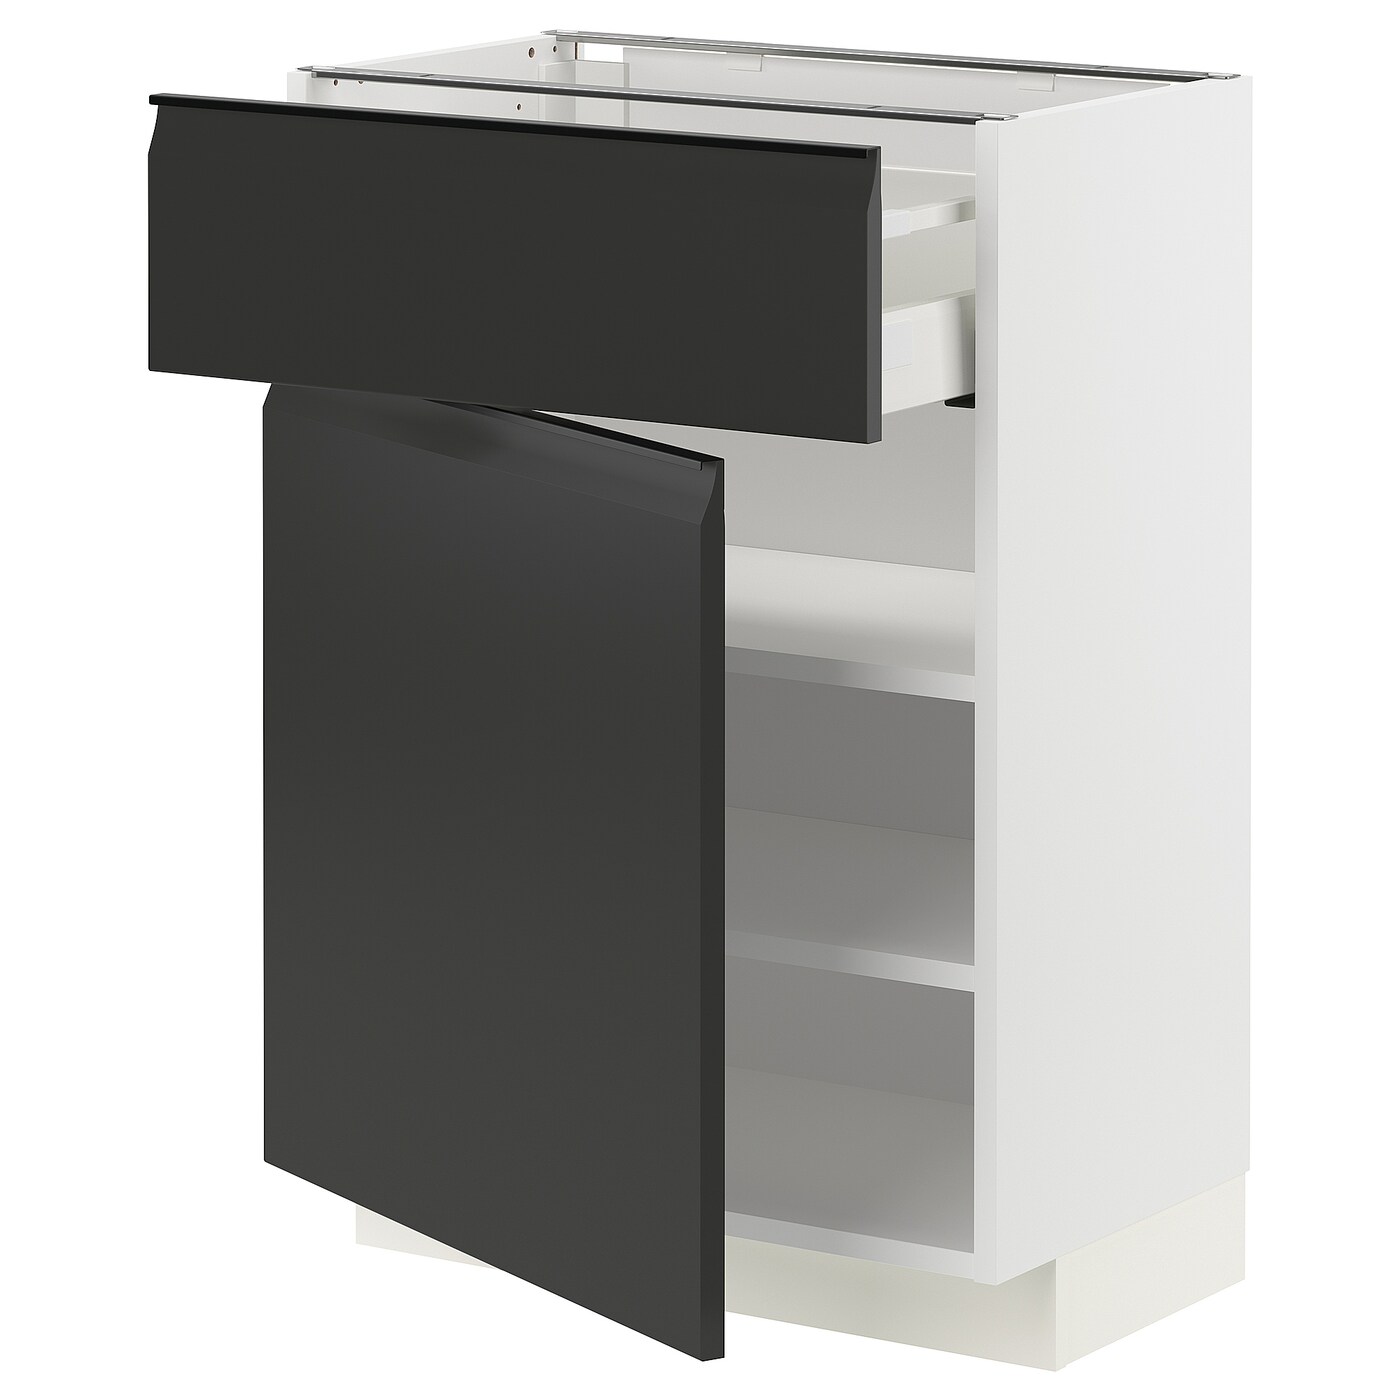 Напольный кухонный шкаф  - IKEA METOD MAXIMERA, 88x39x60см, белый/черный, МЕТОД МАКСИМЕРА ИКЕА